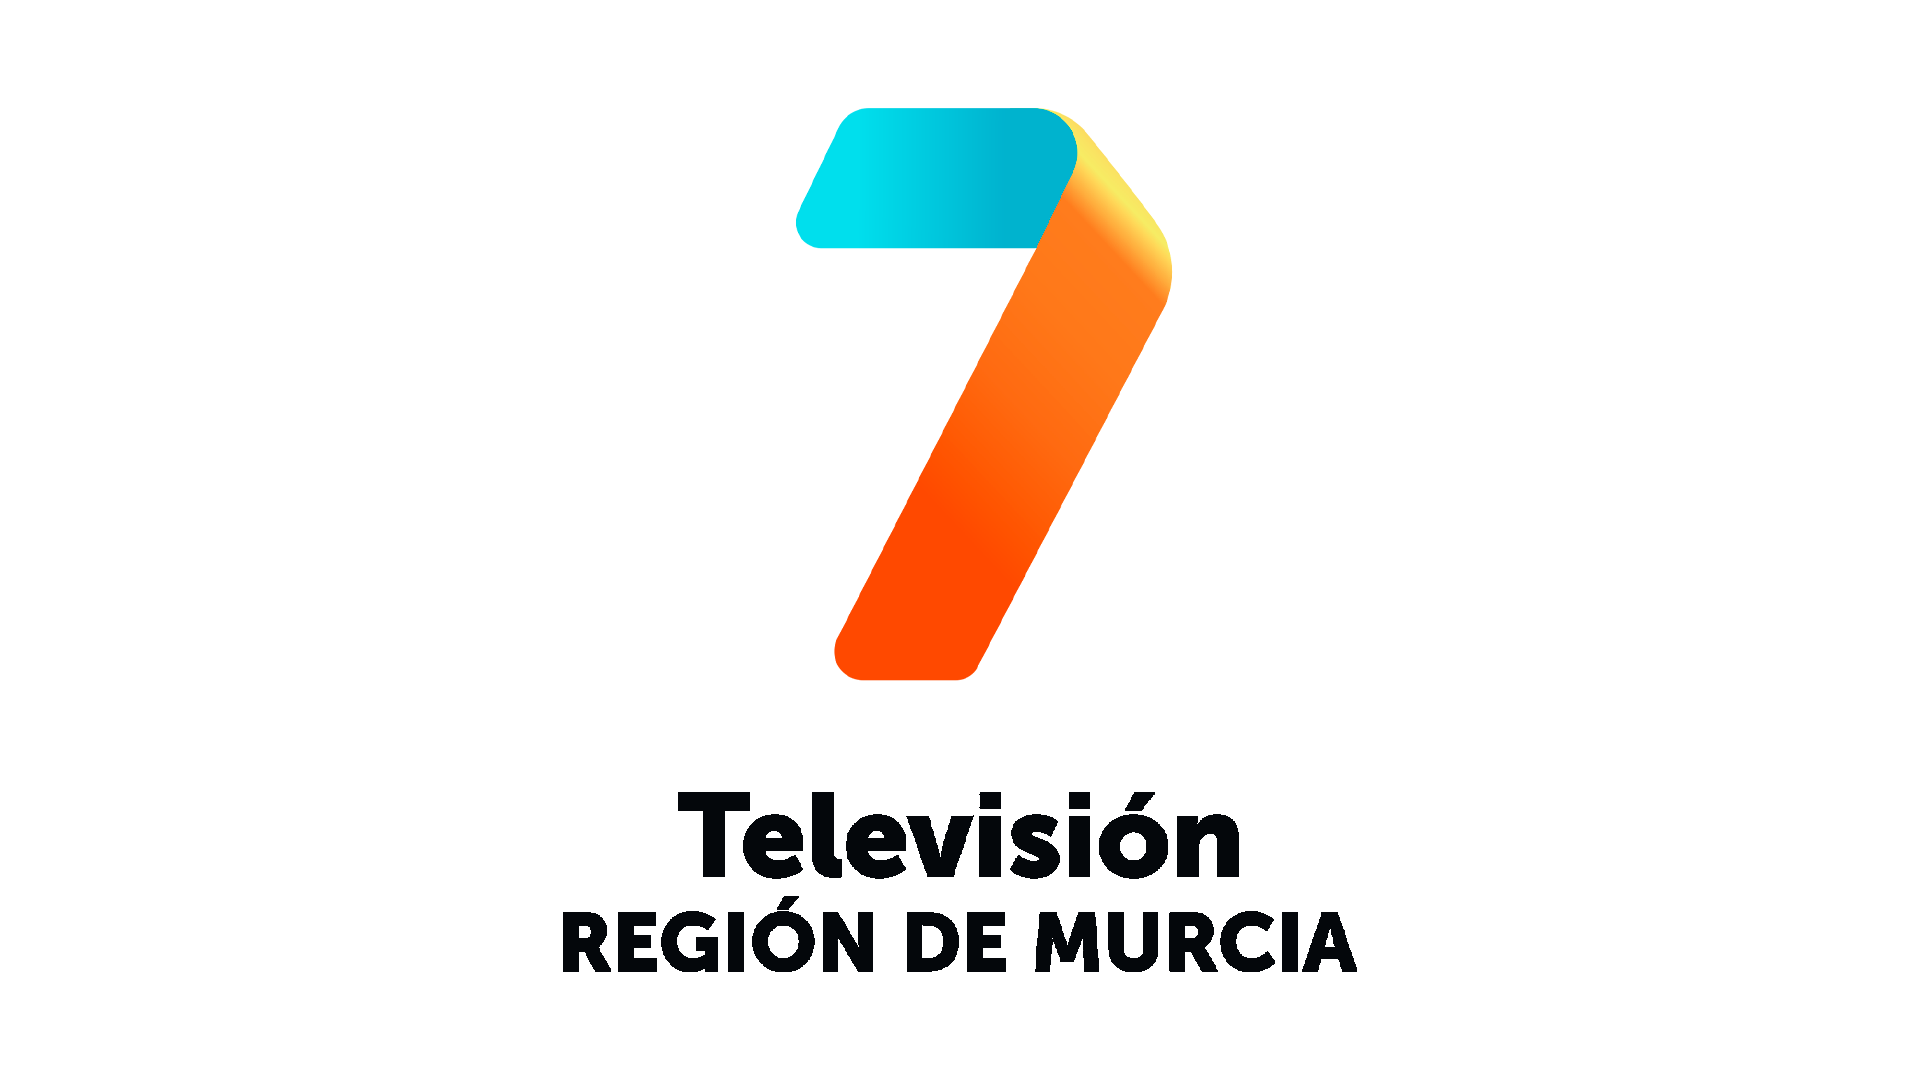 7 Región de Murcia